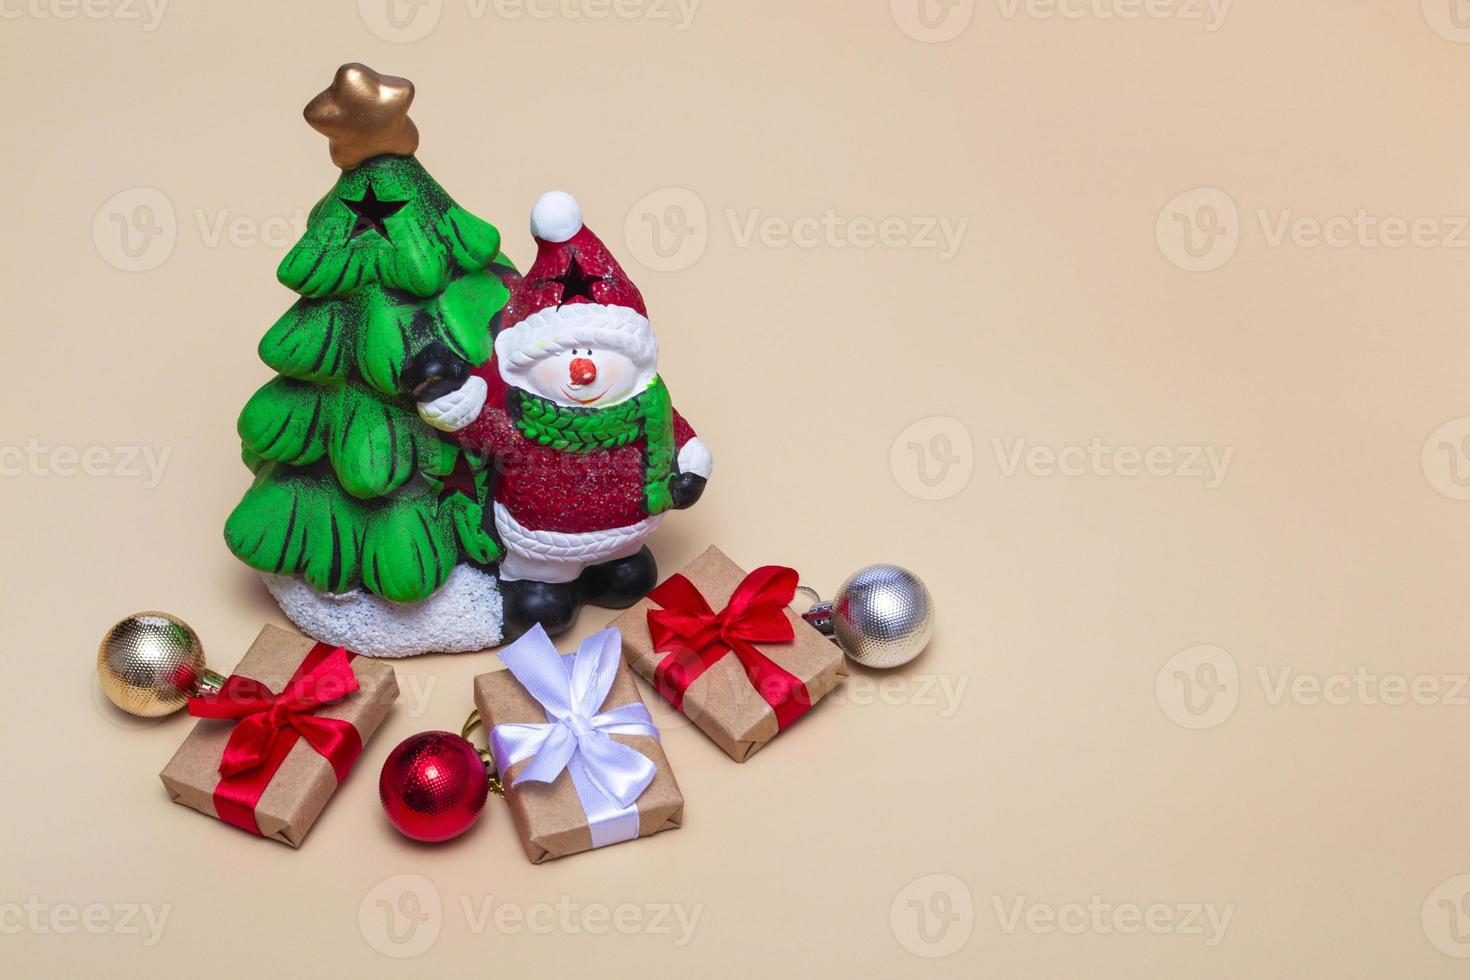 kerstkaart. nieuwjaarsboom met een sneeuwpop en geschenken op een beige achtergrond. close-up, kopieer ruimte foto